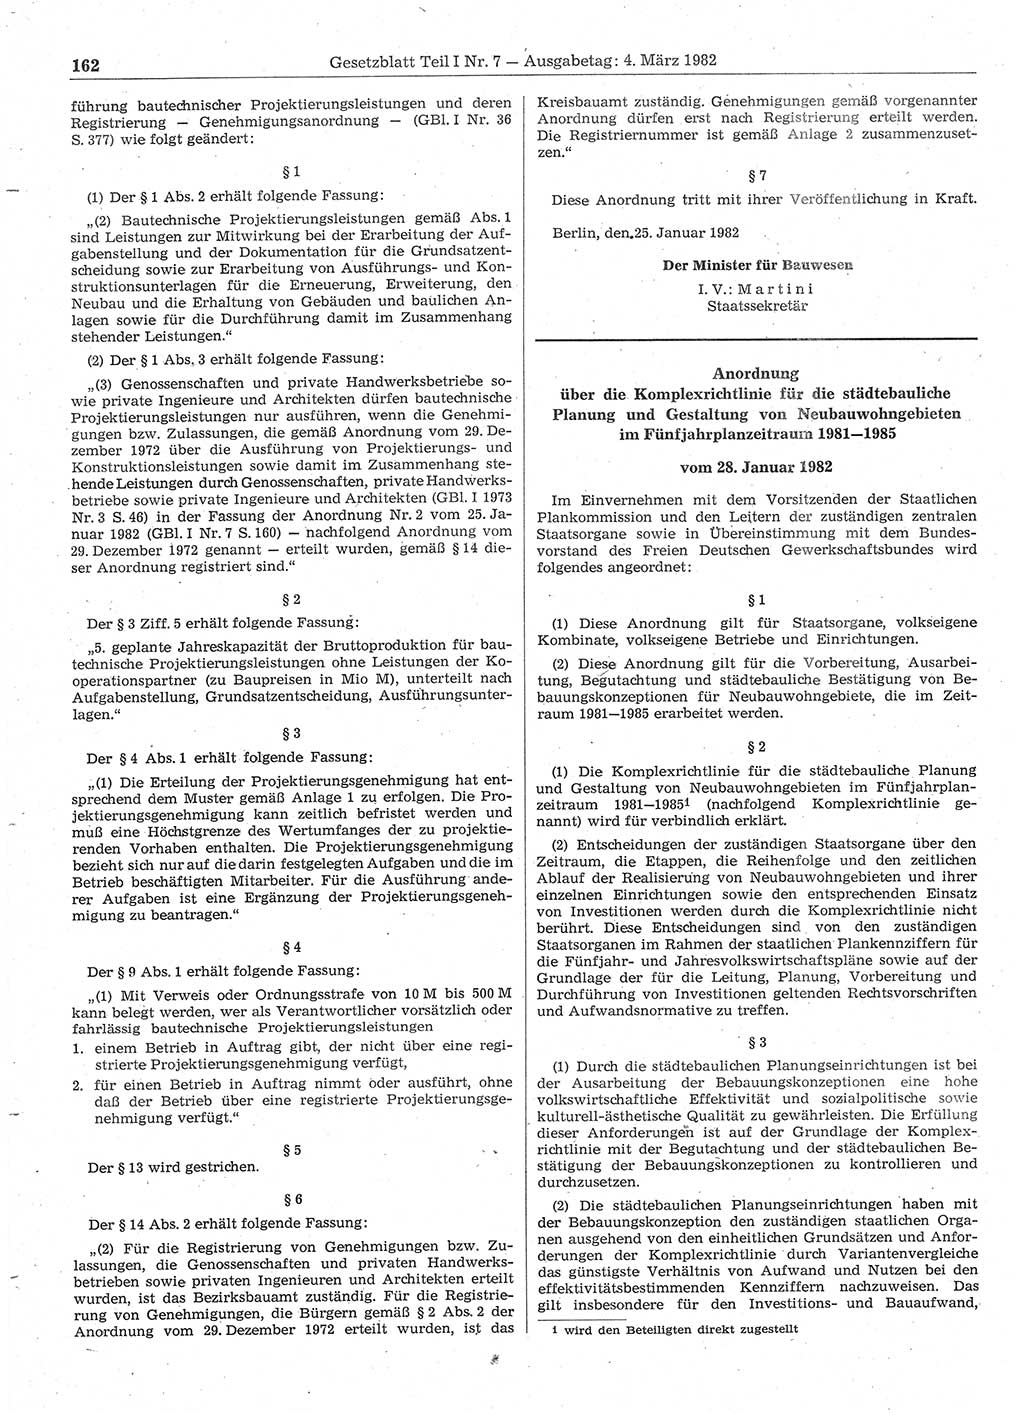 Gesetzblatt (GBl.) der Deutschen Demokratischen Republik (DDR) Teil Ⅰ 1982, Seite 162 (GBl. DDR Ⅰ 1982, S. 162)